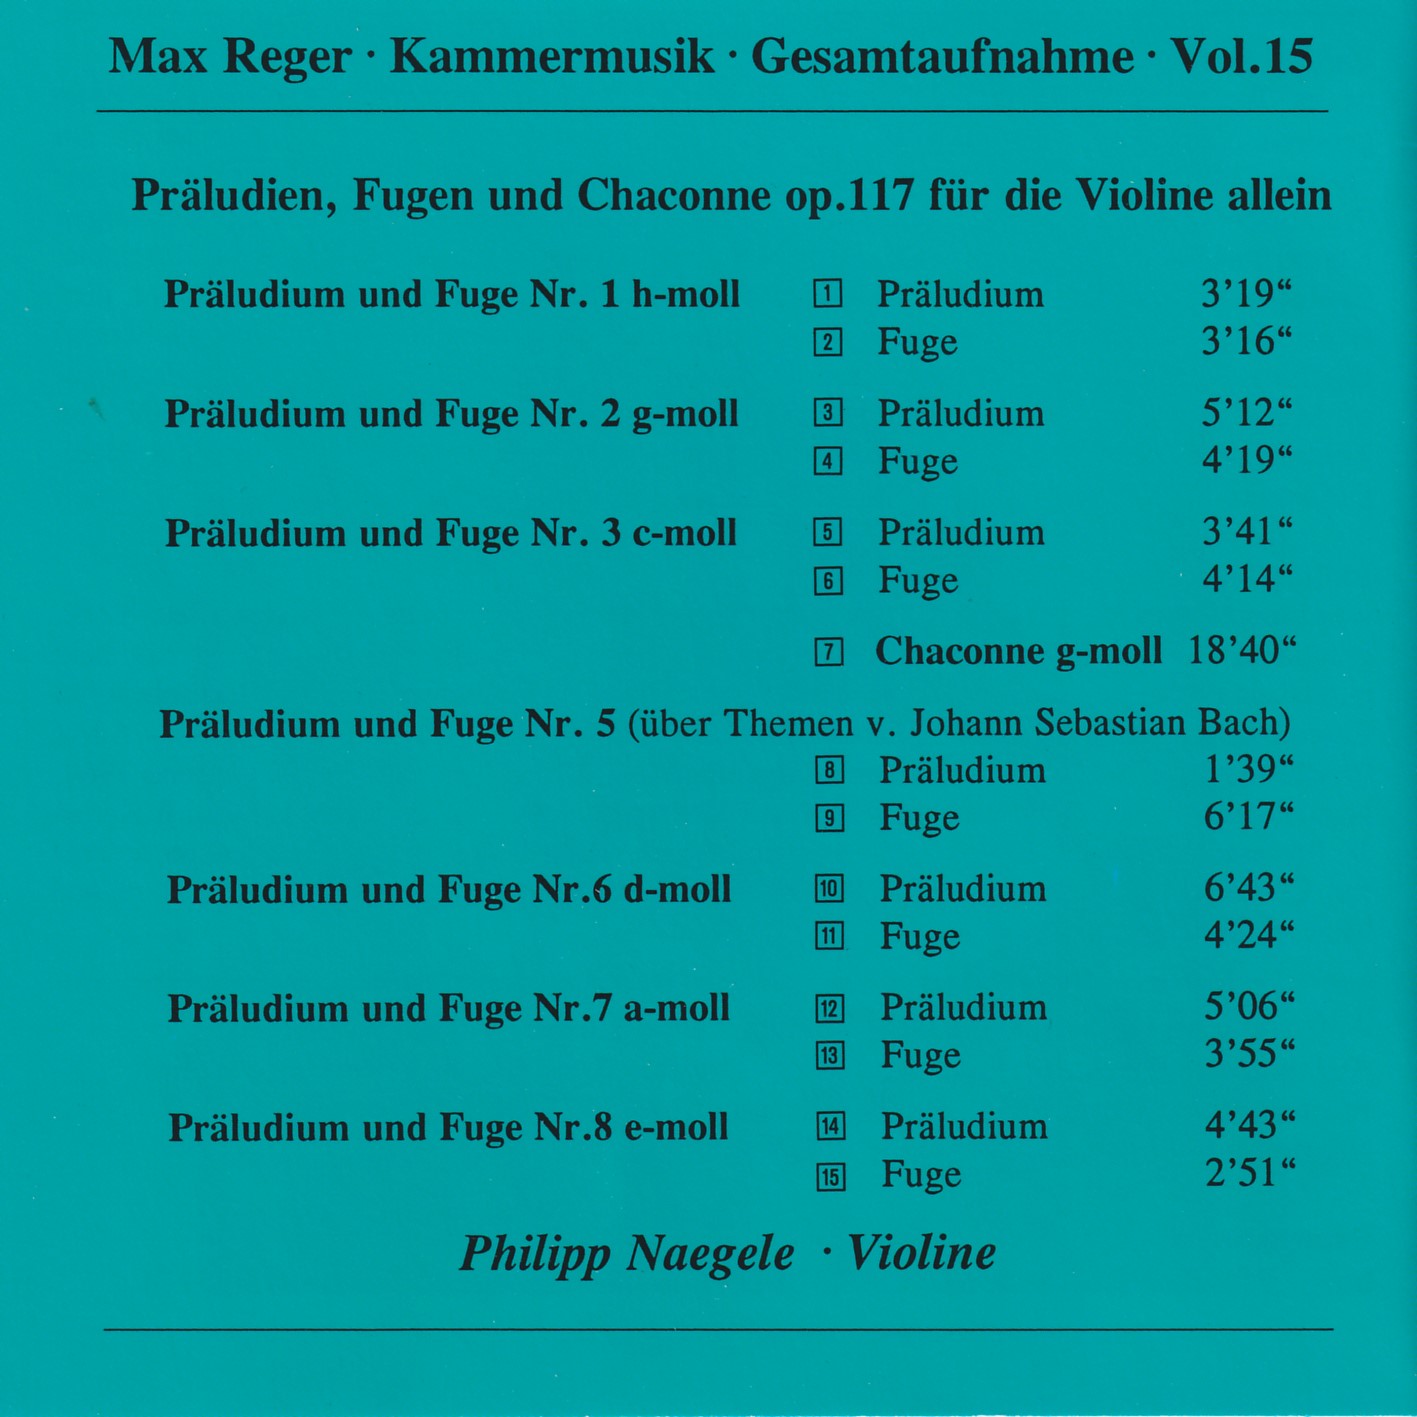 Max Reger - Kammermusik komplett Vol. 15